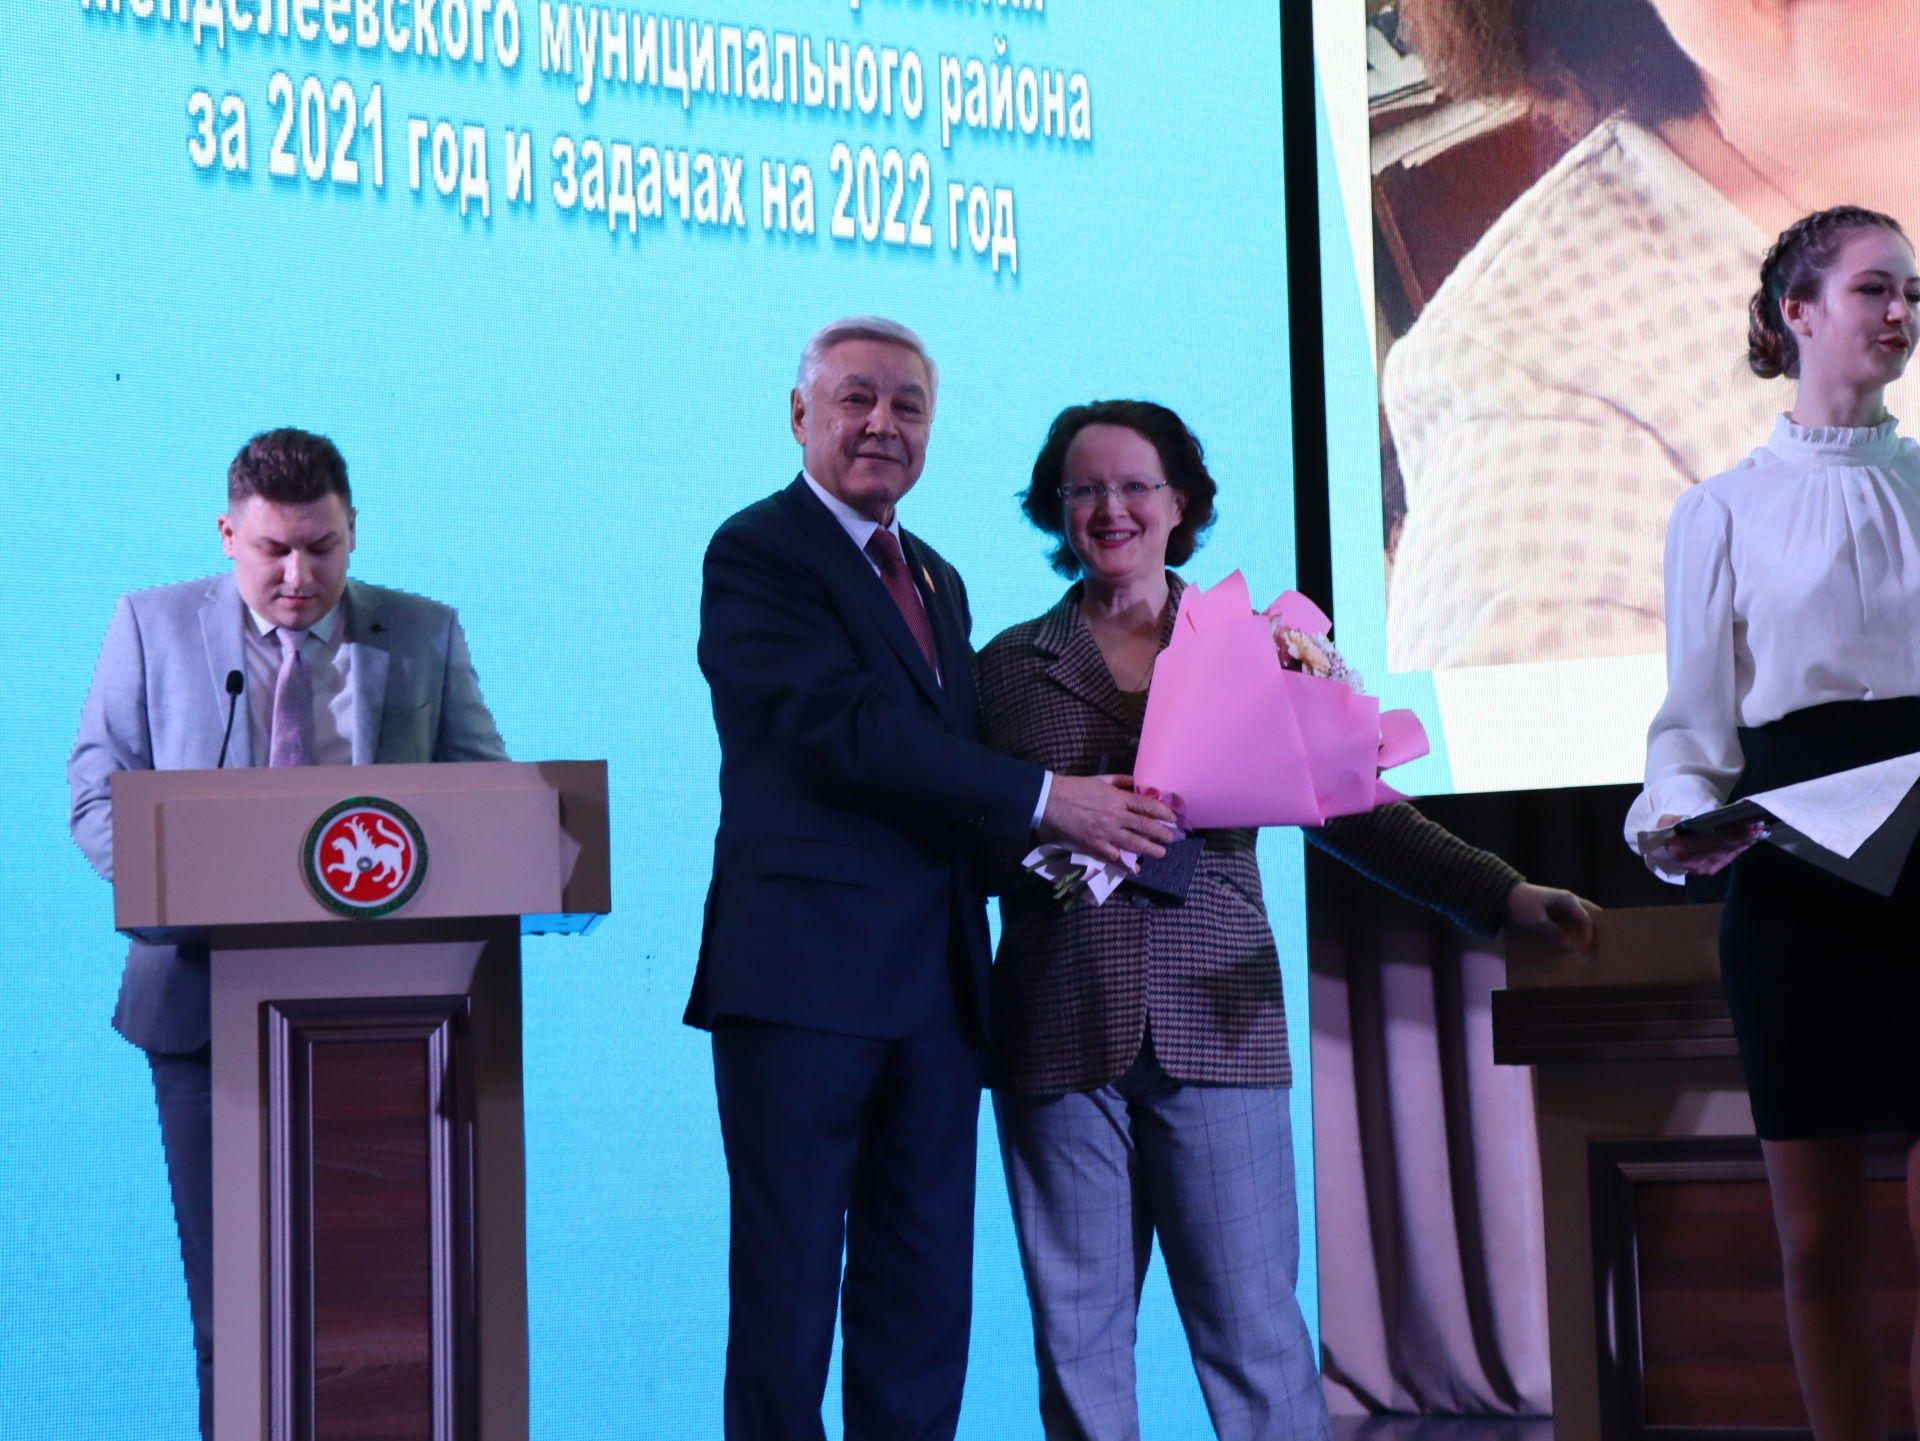 Менделеевцев наградили медалями «За заслуги в развитии местного самоуправления в Республике Татарстан»